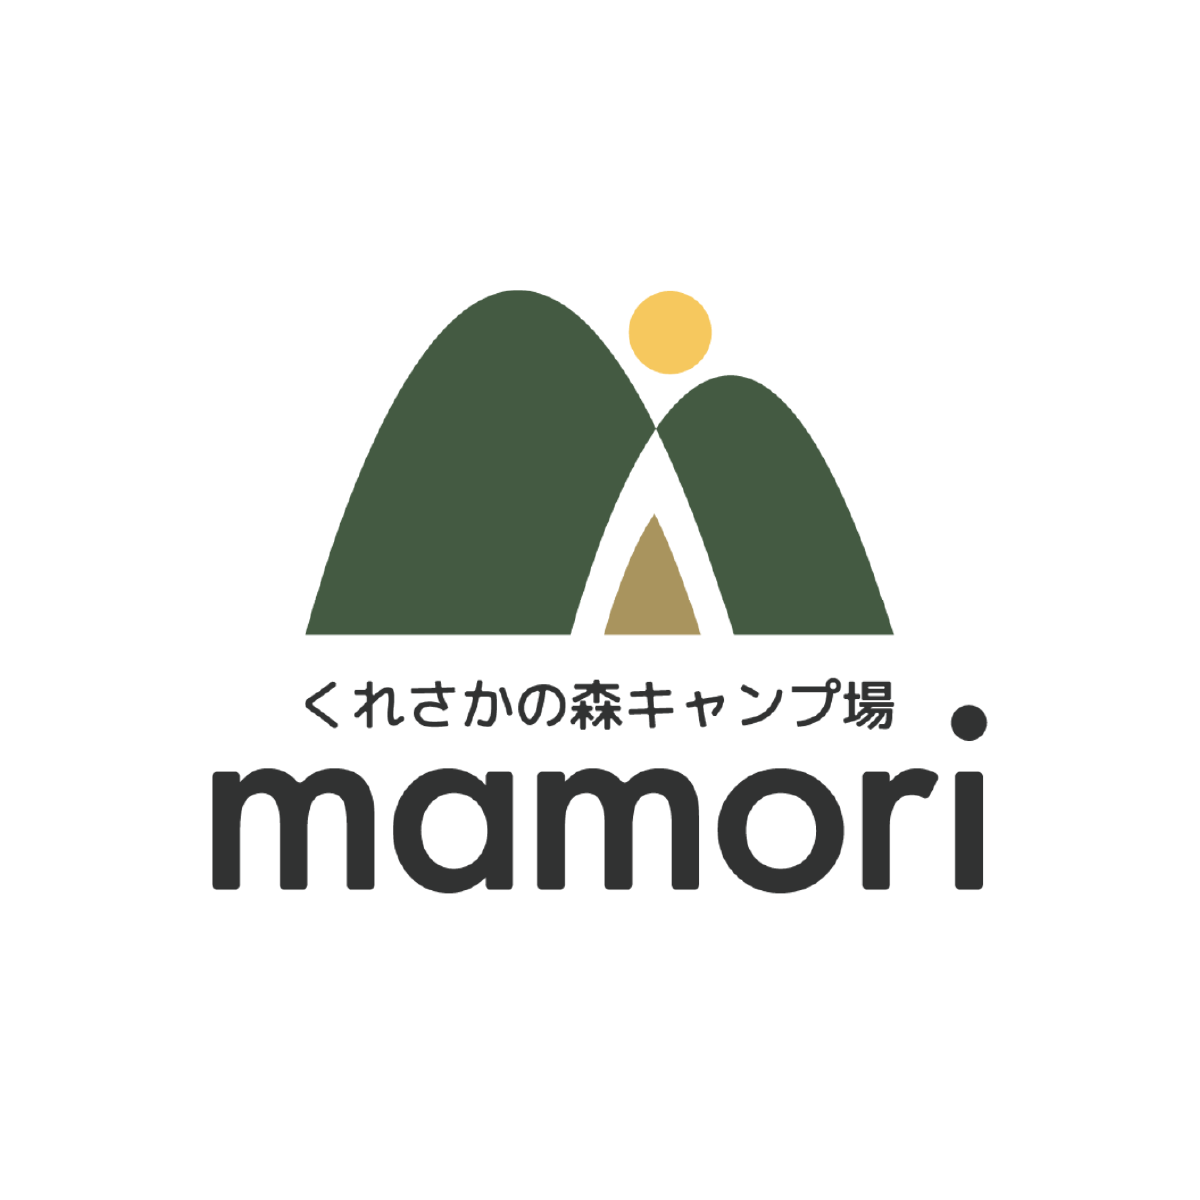 群馬県吾妻郡で自分に還る場所、くれさかの森キャンプ場  mamori